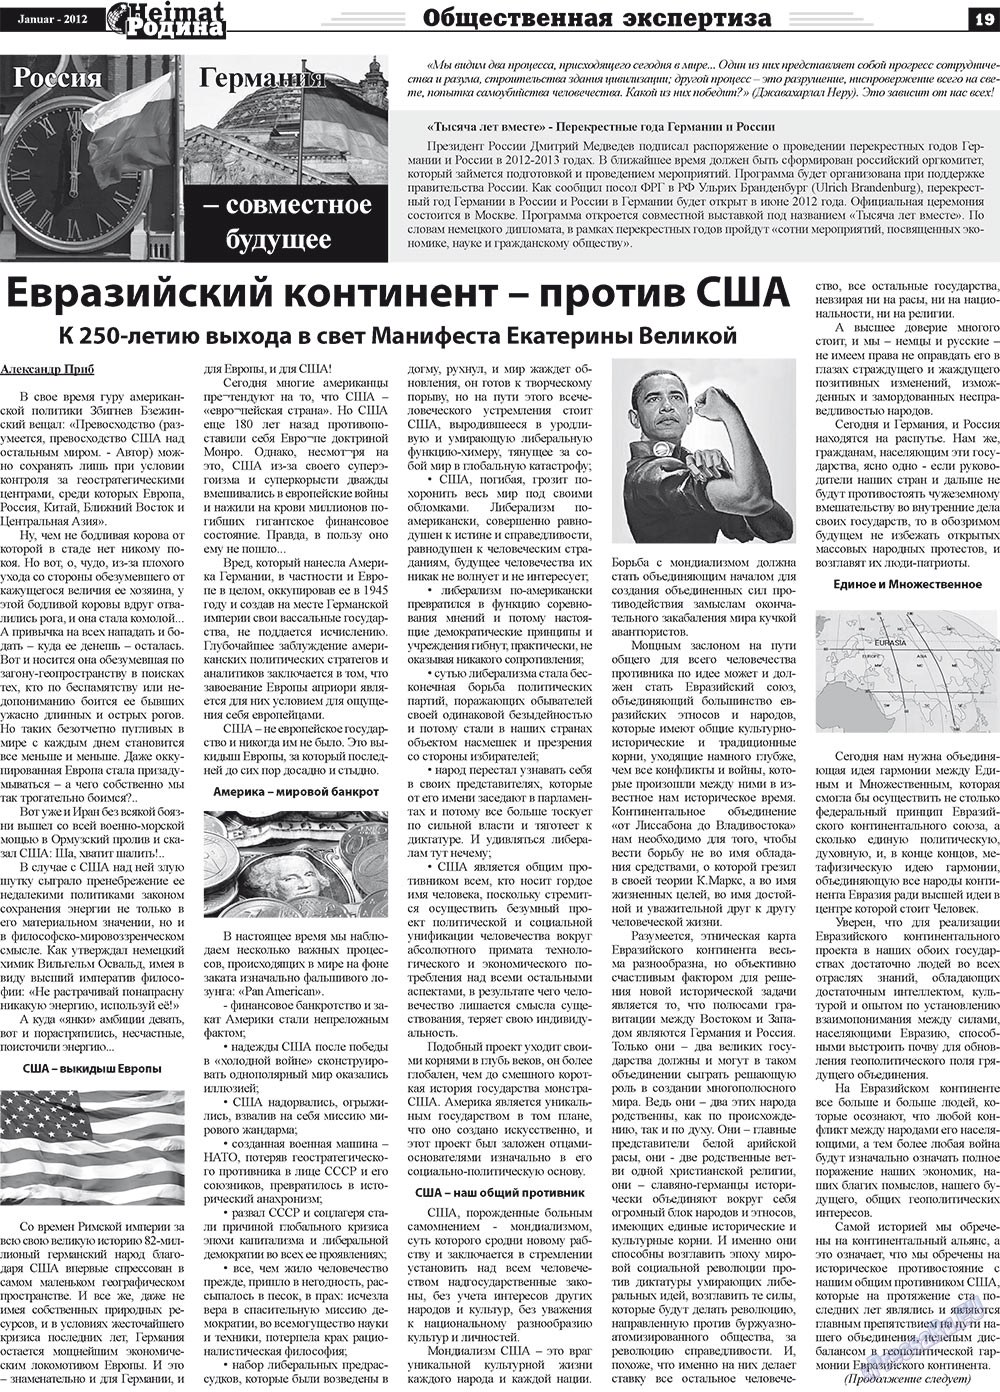 Heimat-Родина (газета). 2012 год, номер 1, стр. 19